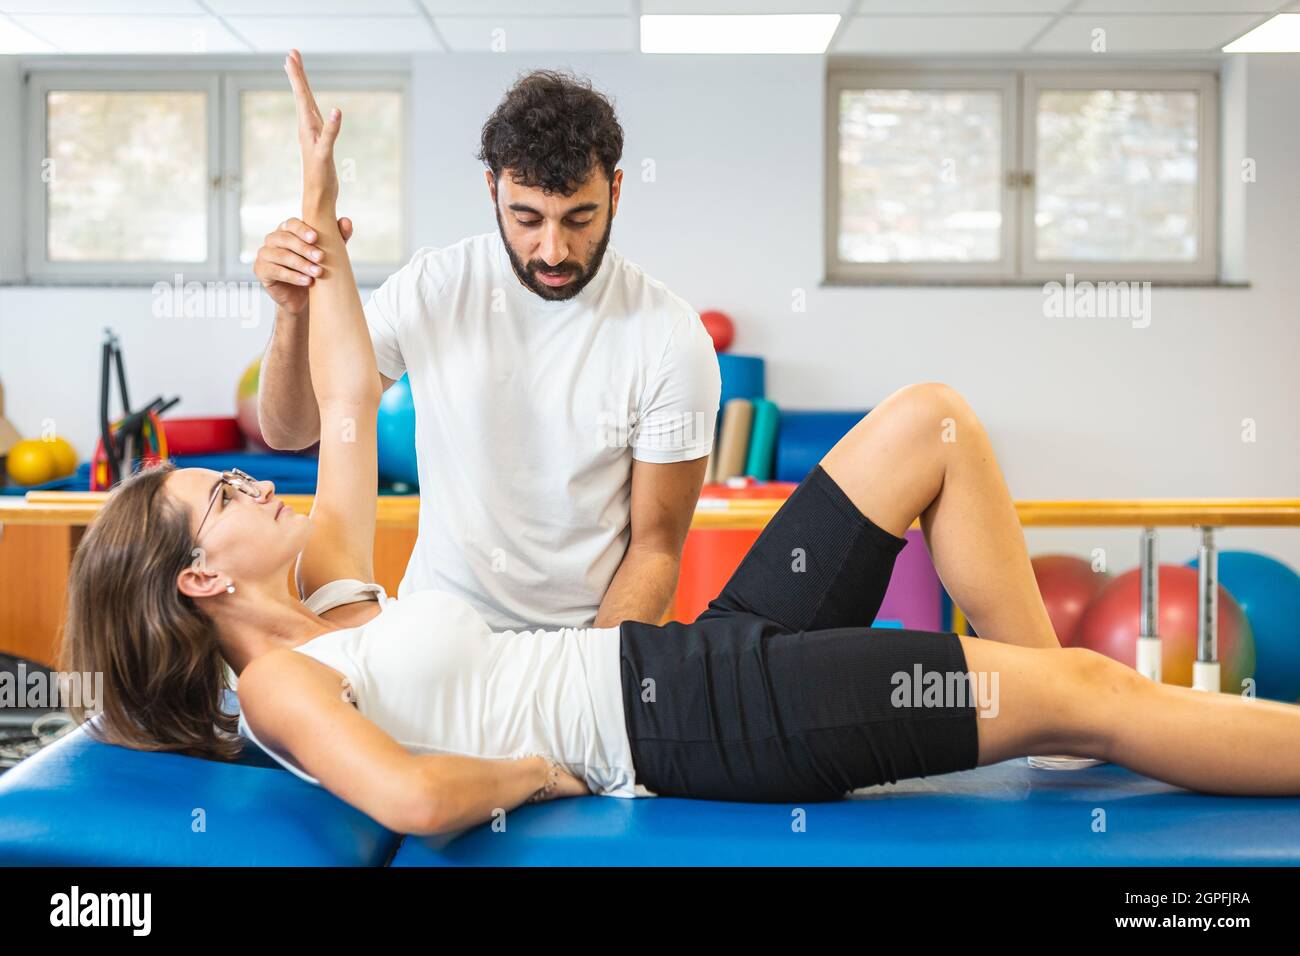 Frau, die auf dem Rücken liegt und Oberkörperübungen mit Hilfe eines männlichen Physiotherapeuten macht. Stockfoto